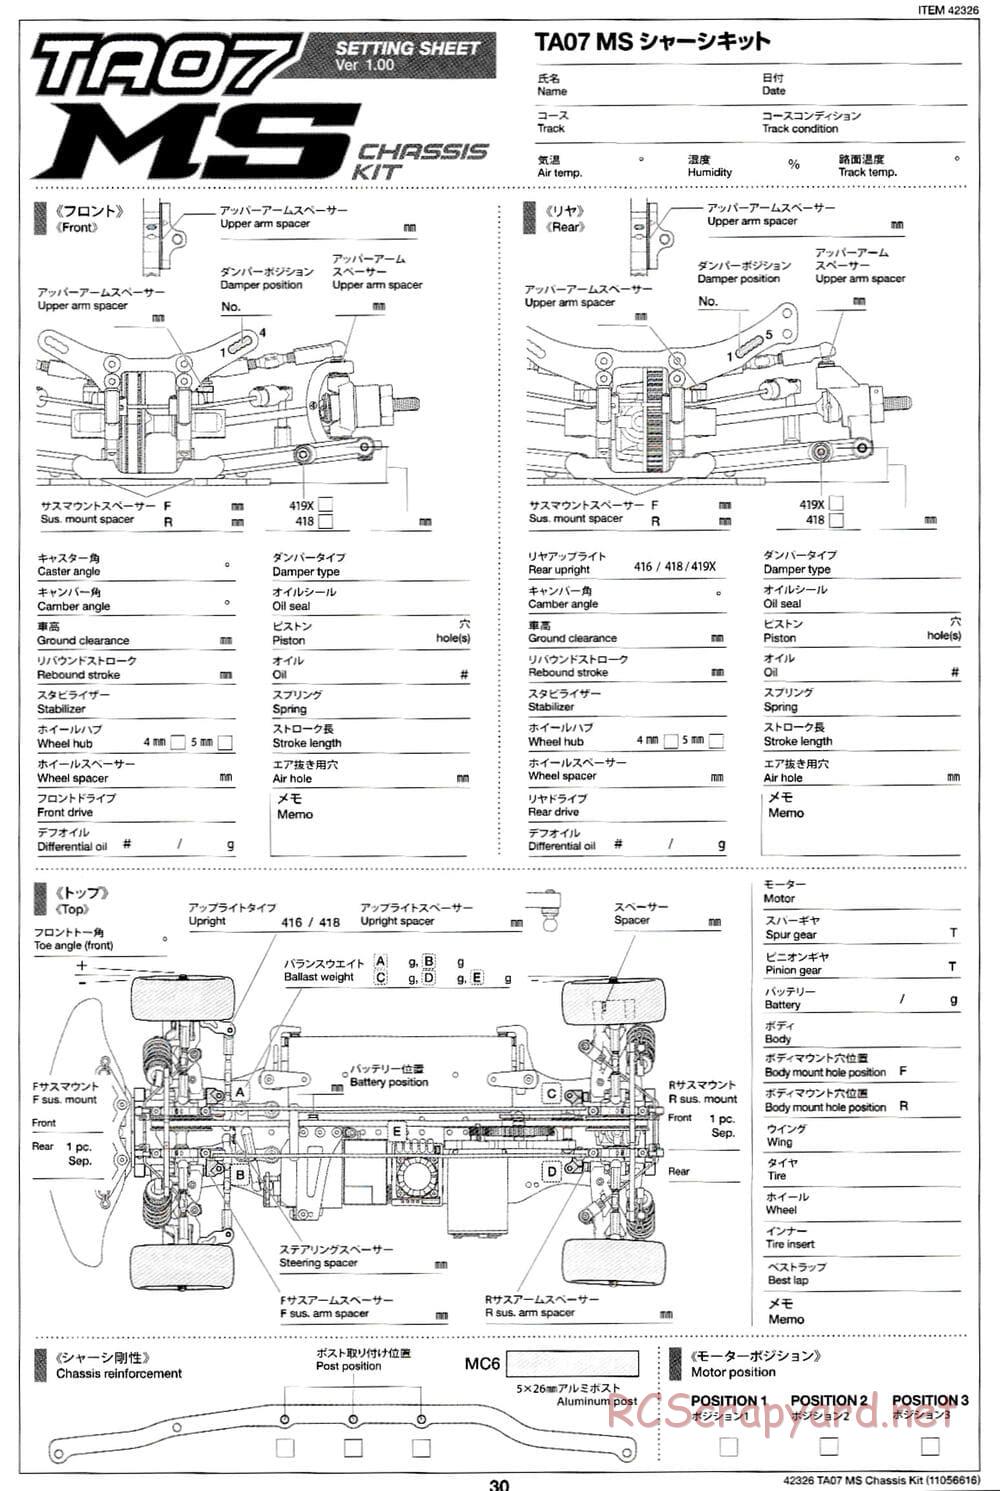 Tamiya - TA07 MS Chassis - Manual - Page 30